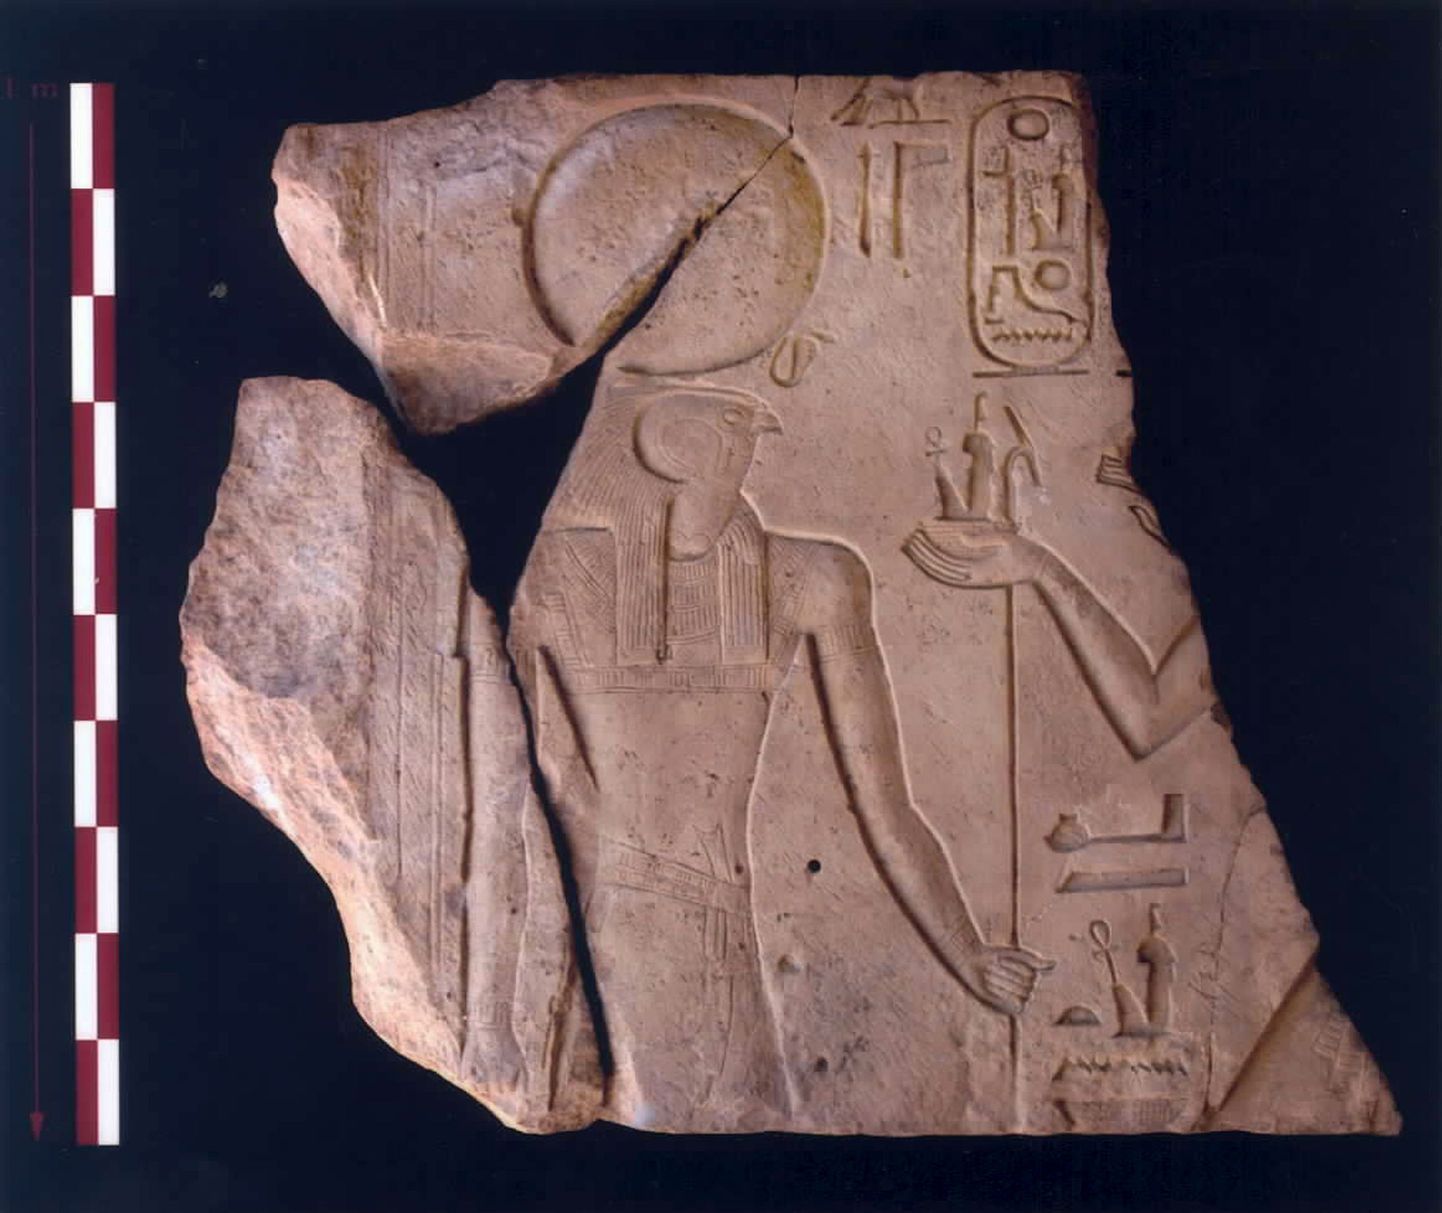 Tharust leitud kiviplaat, mis kirjeldab, et tegemist on Horuse nime kandva sõjatee algusega